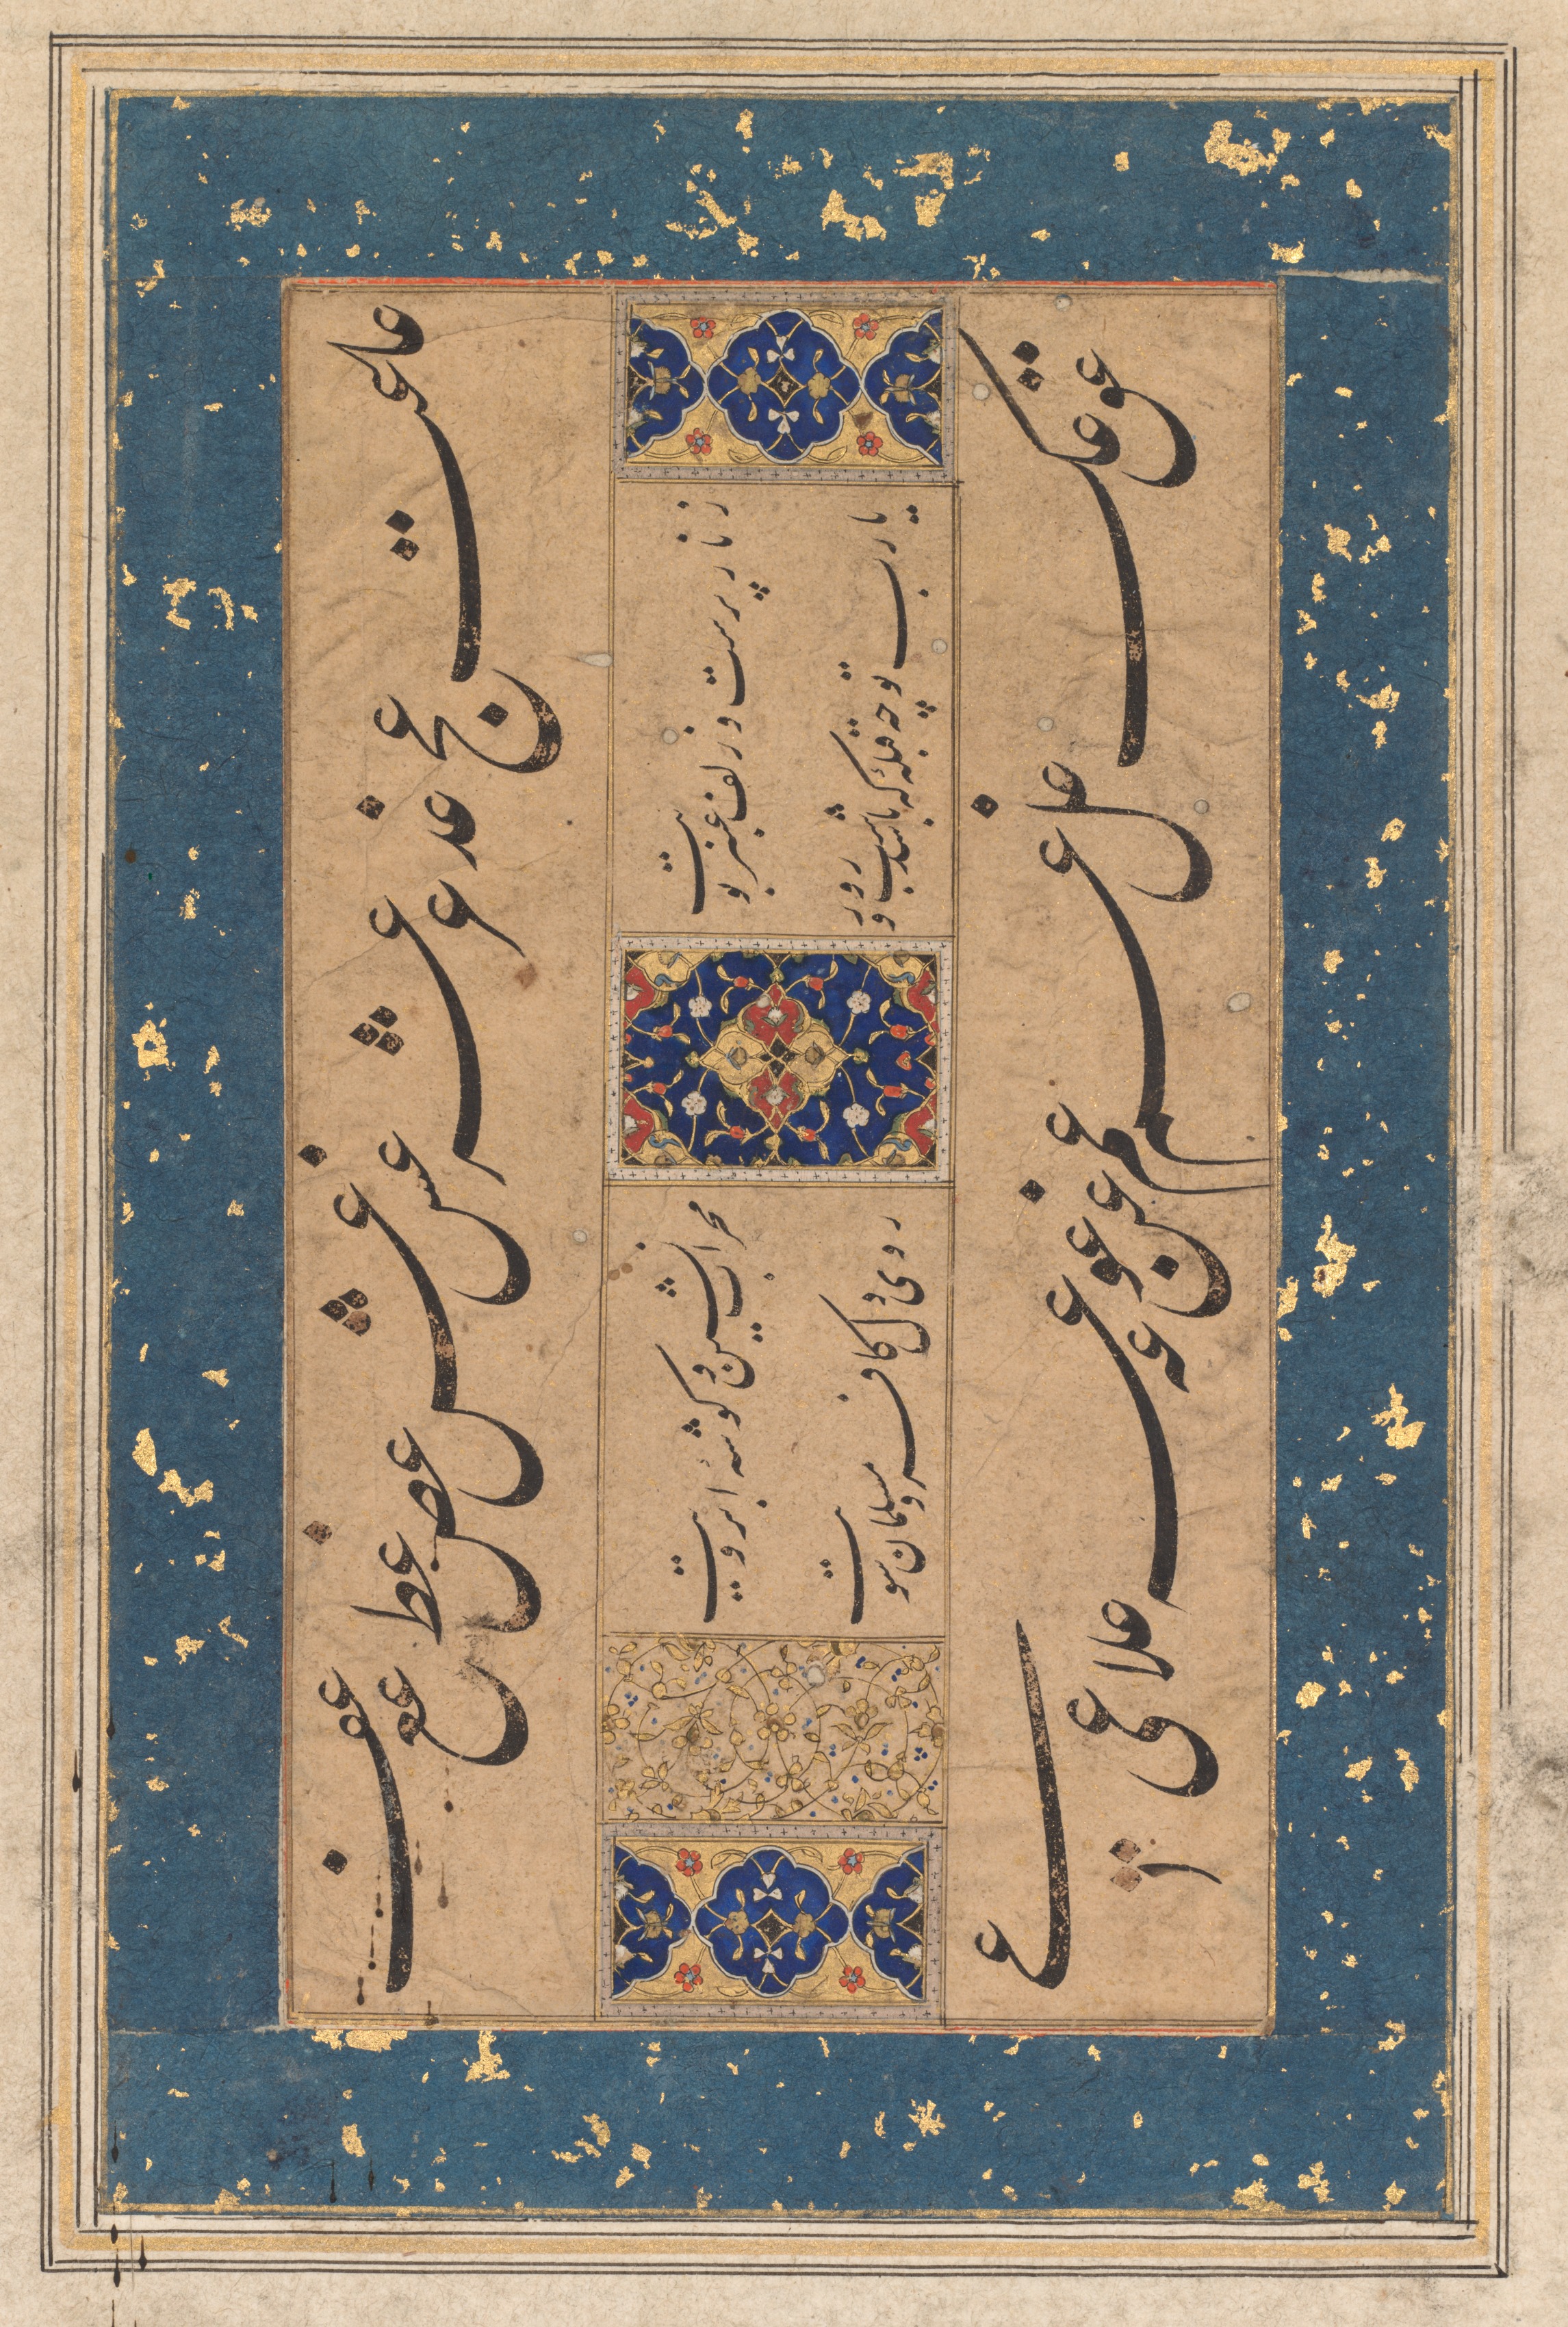 Persian ruba‘i (quatrain) by Maulana Muḥammad Murshidi Zawara’i (Persian, late 1500s–early 1600s) (verso)